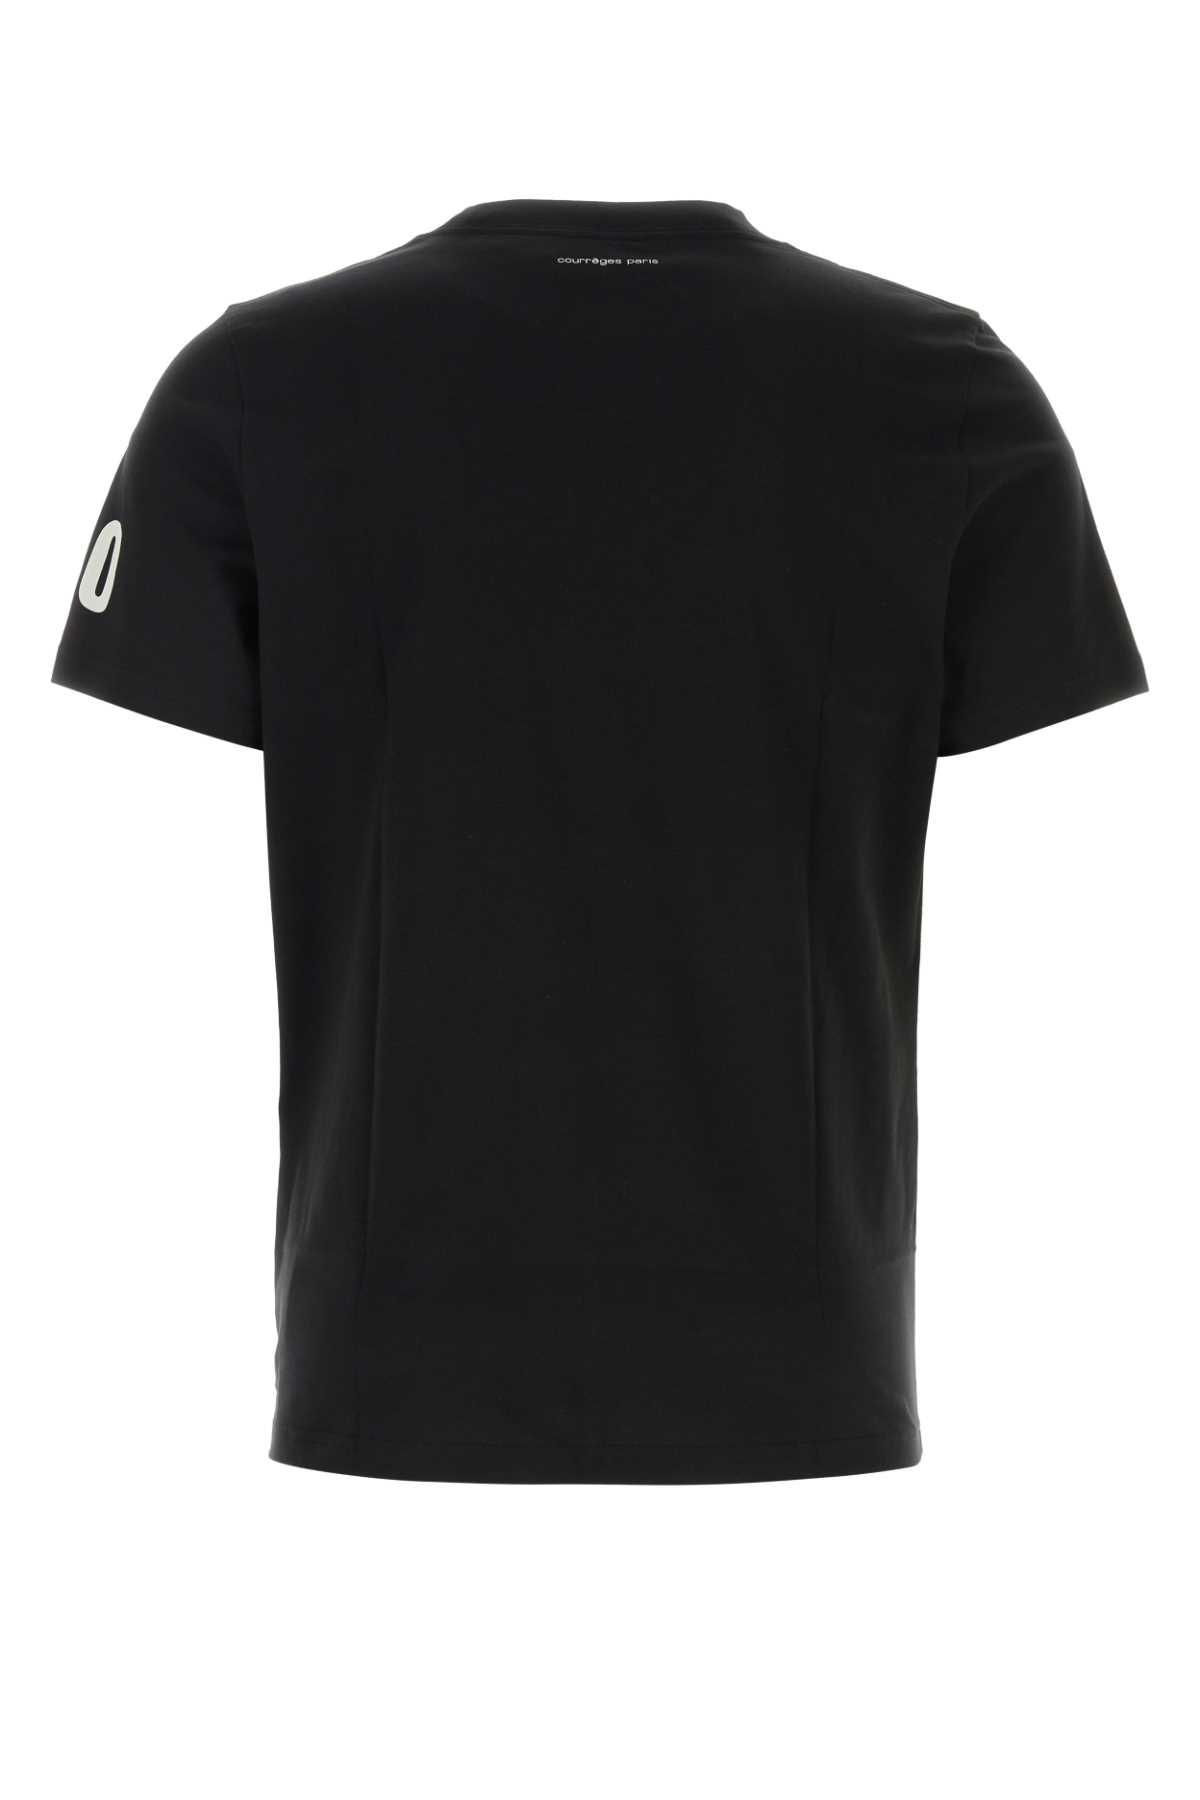 Courrèges Black Cotton T-shirt